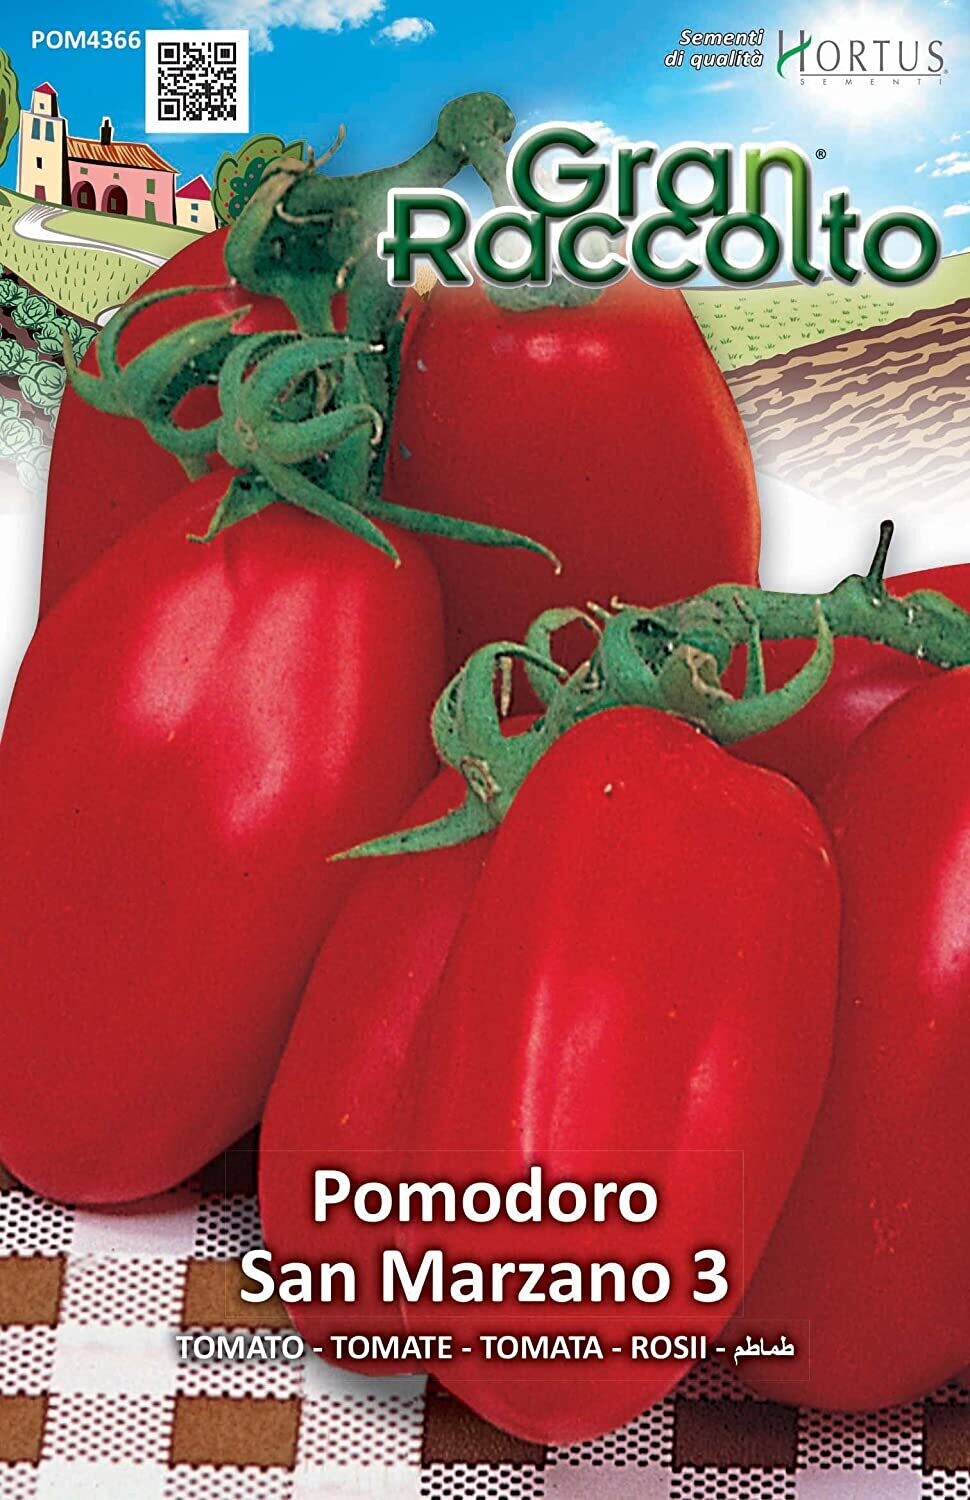 HORTUS Gran Raccolto Pomodoro San Marzano 3